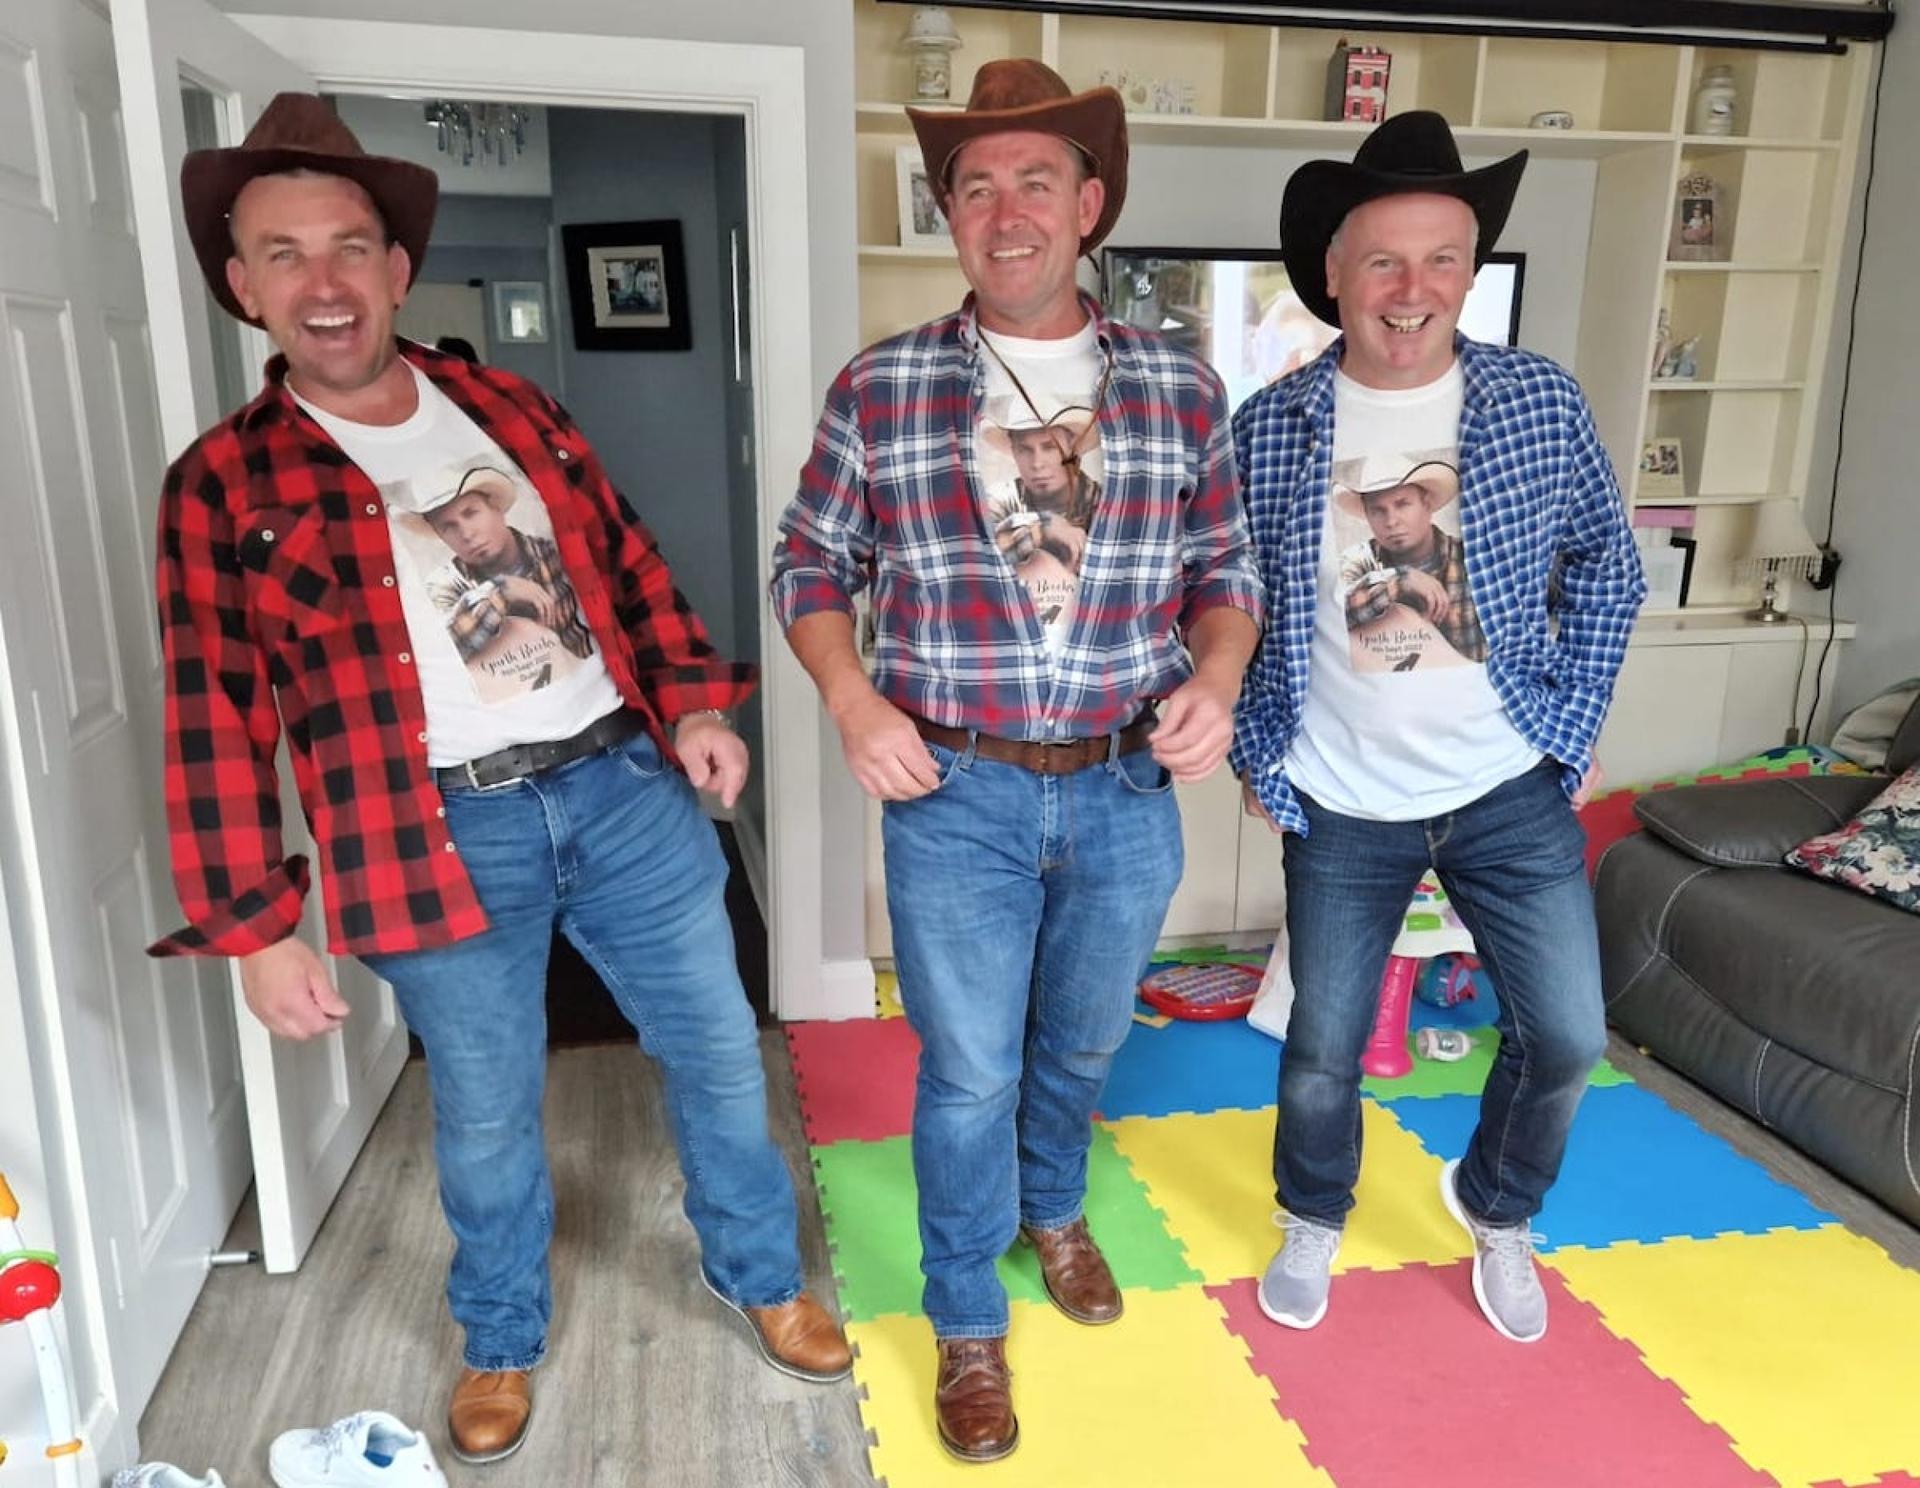 three men in Western attire